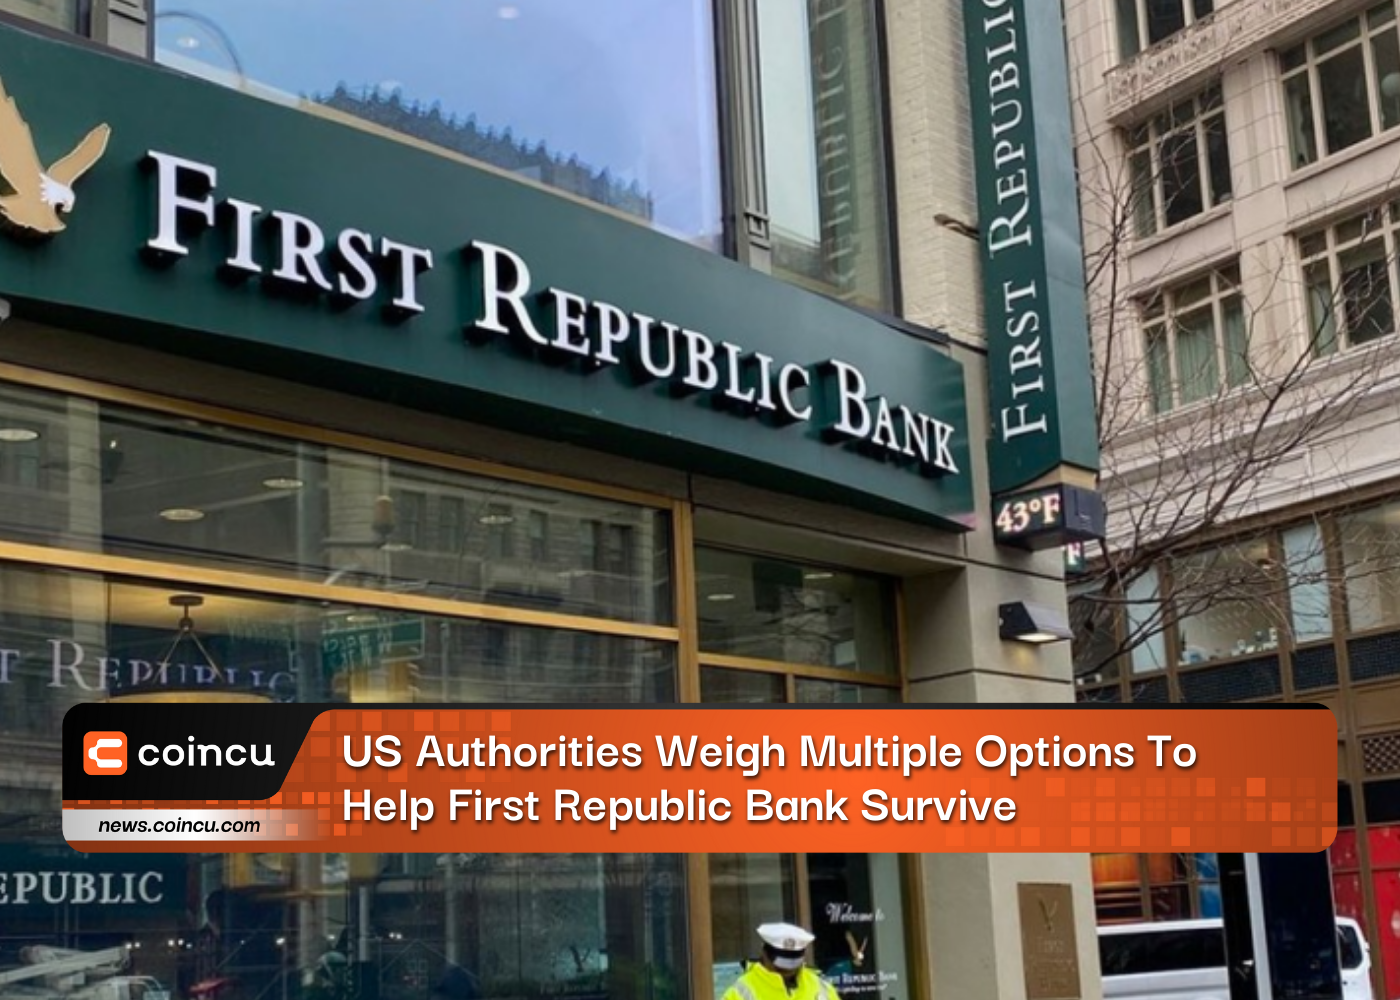 Autoridades dos EUA avaliam múltiplas opções para ajudar o First Republic Bank a sobreviver